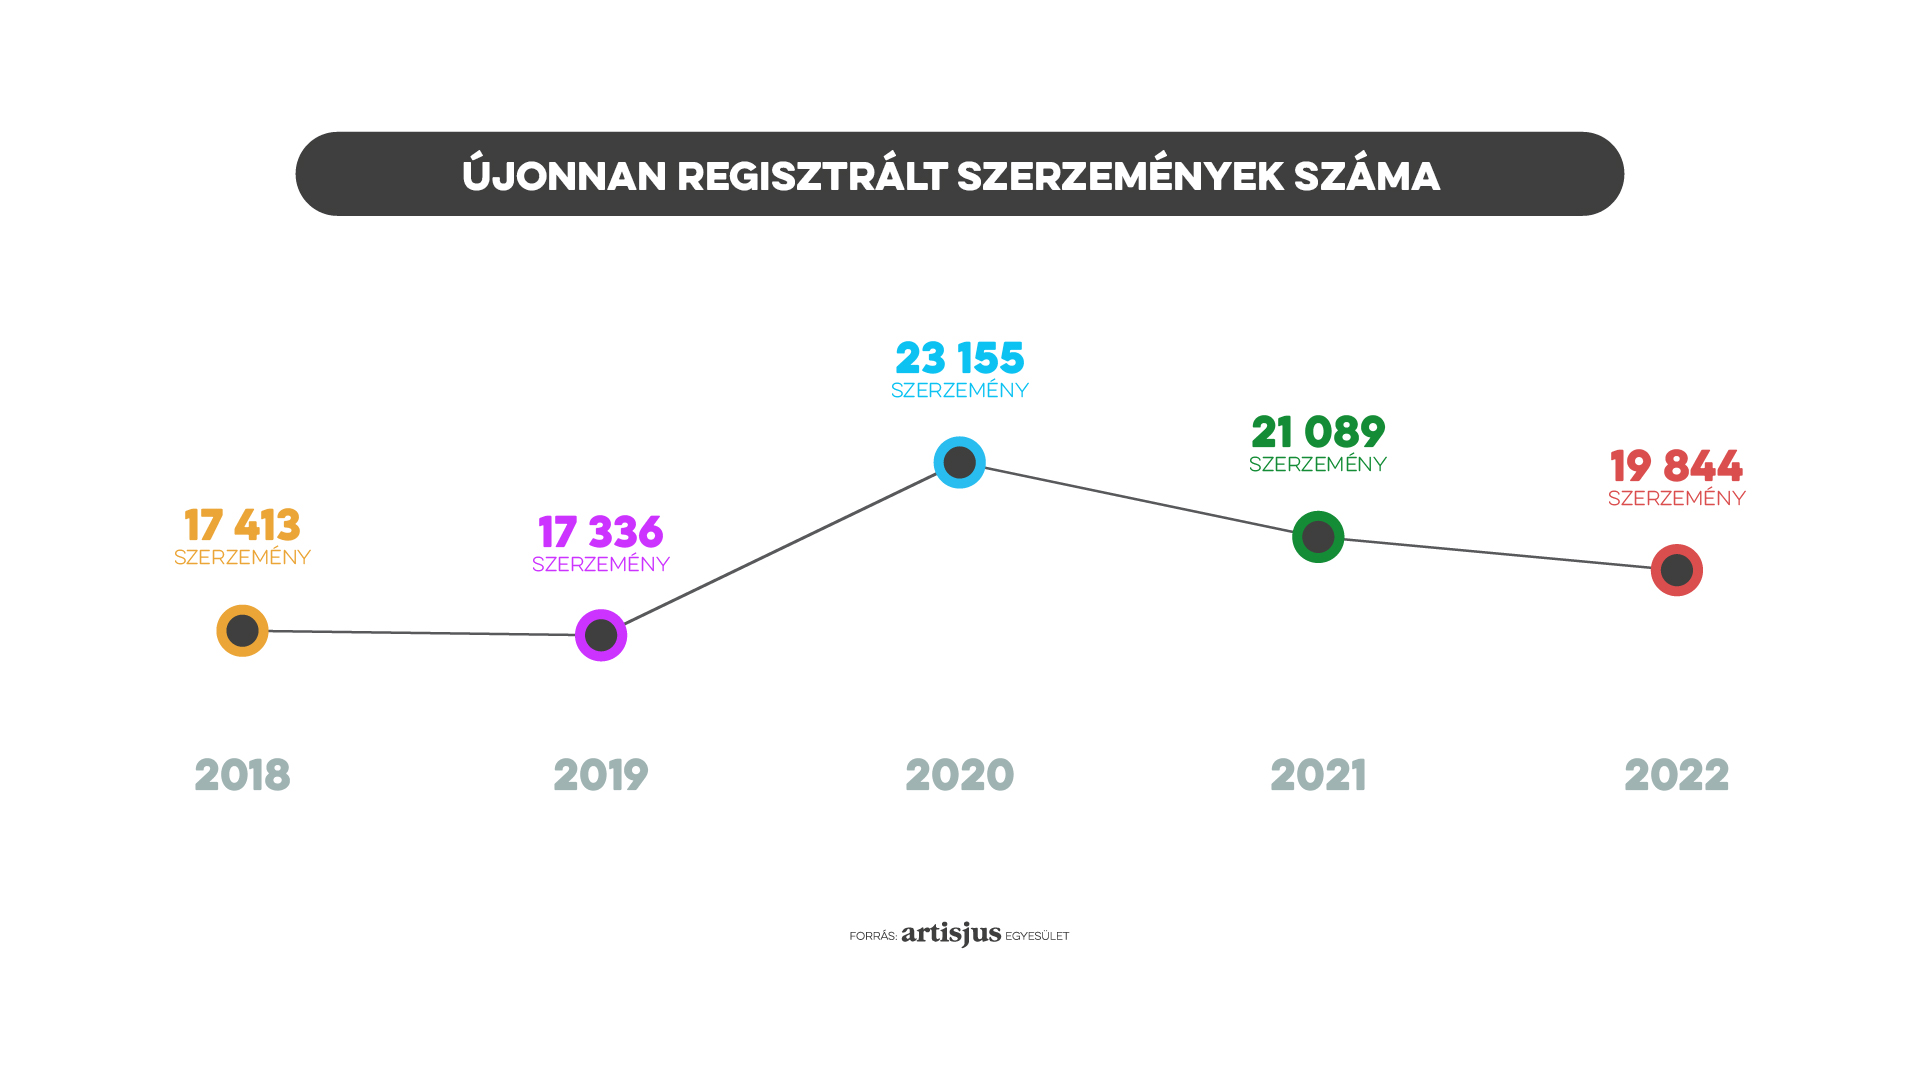 Újonnen bejelentett szerzemények száma 2018-2022